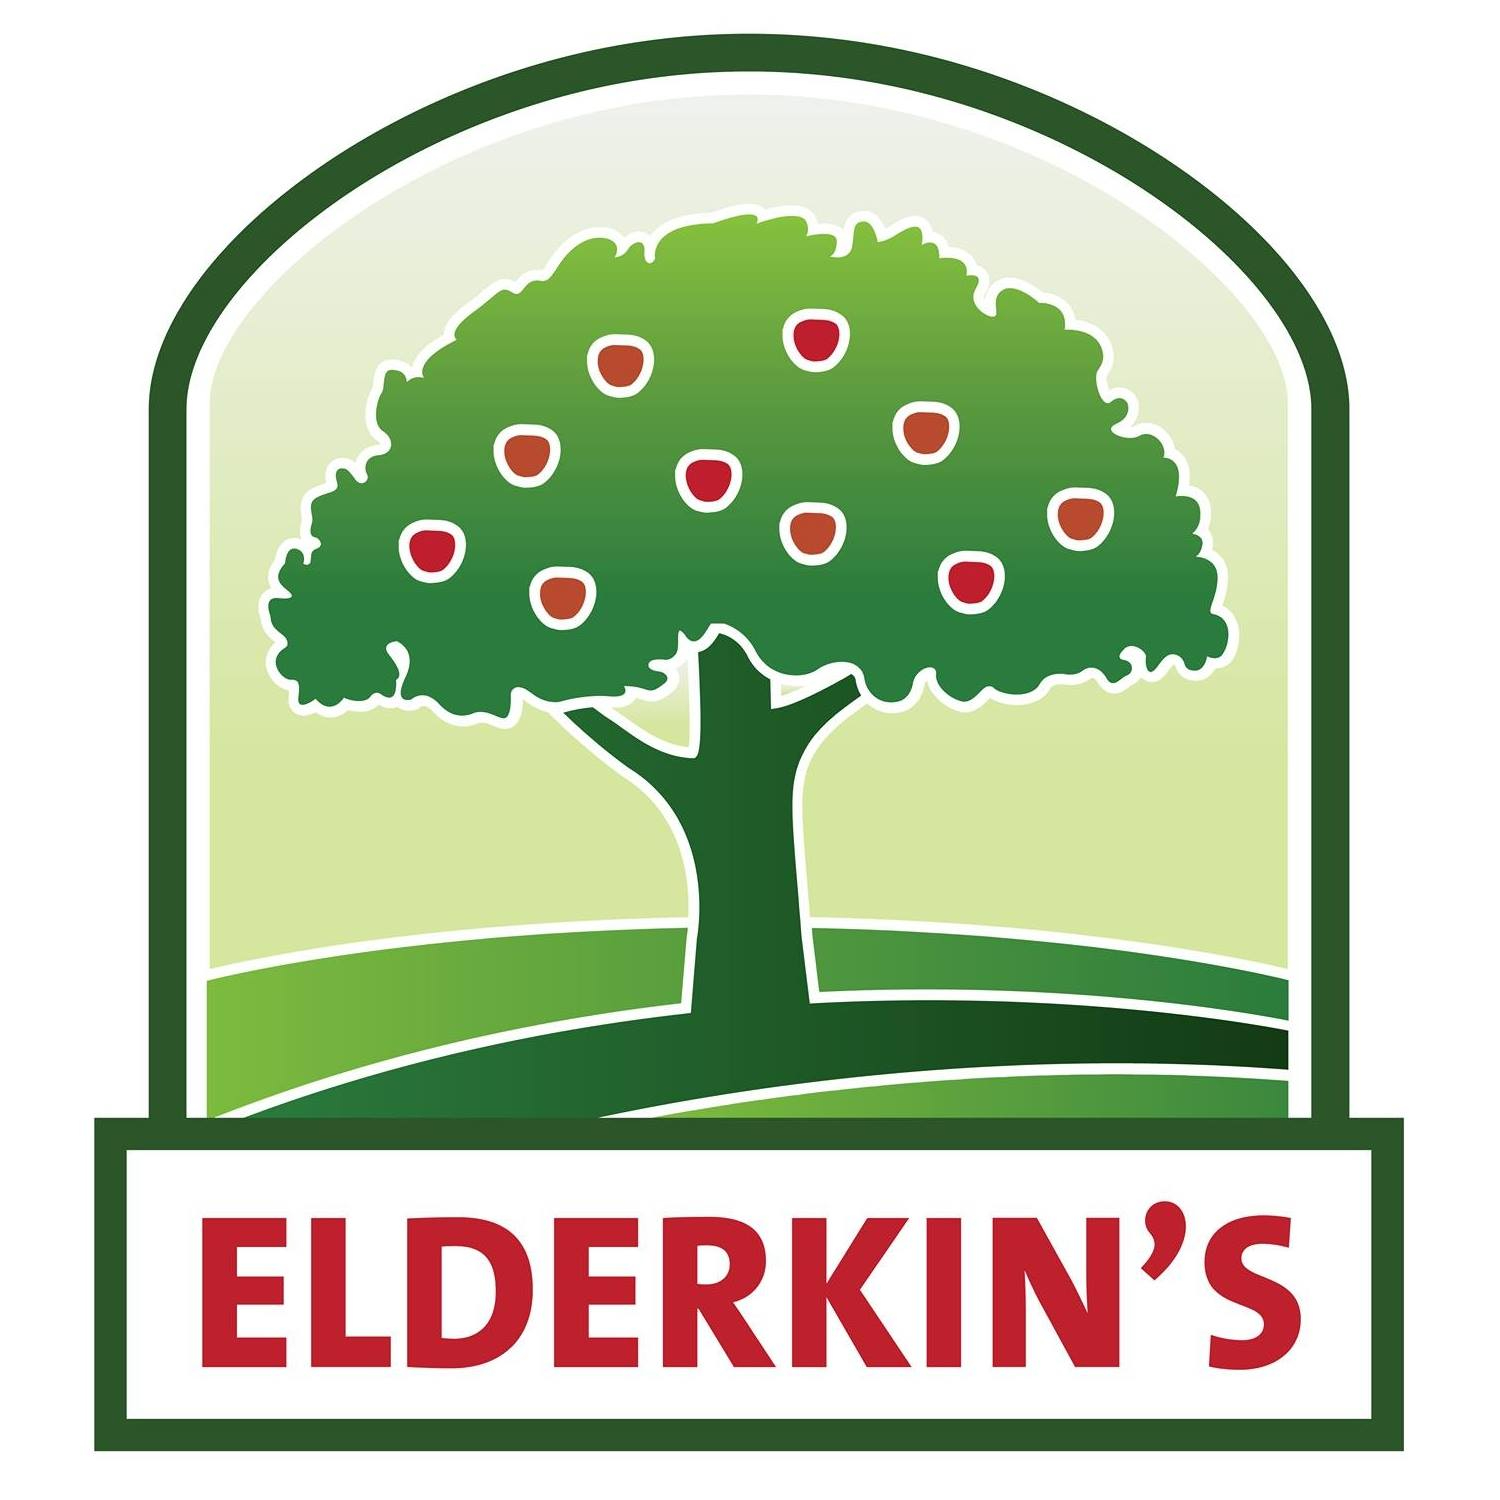 Elderkin's Farm Market & Bakery